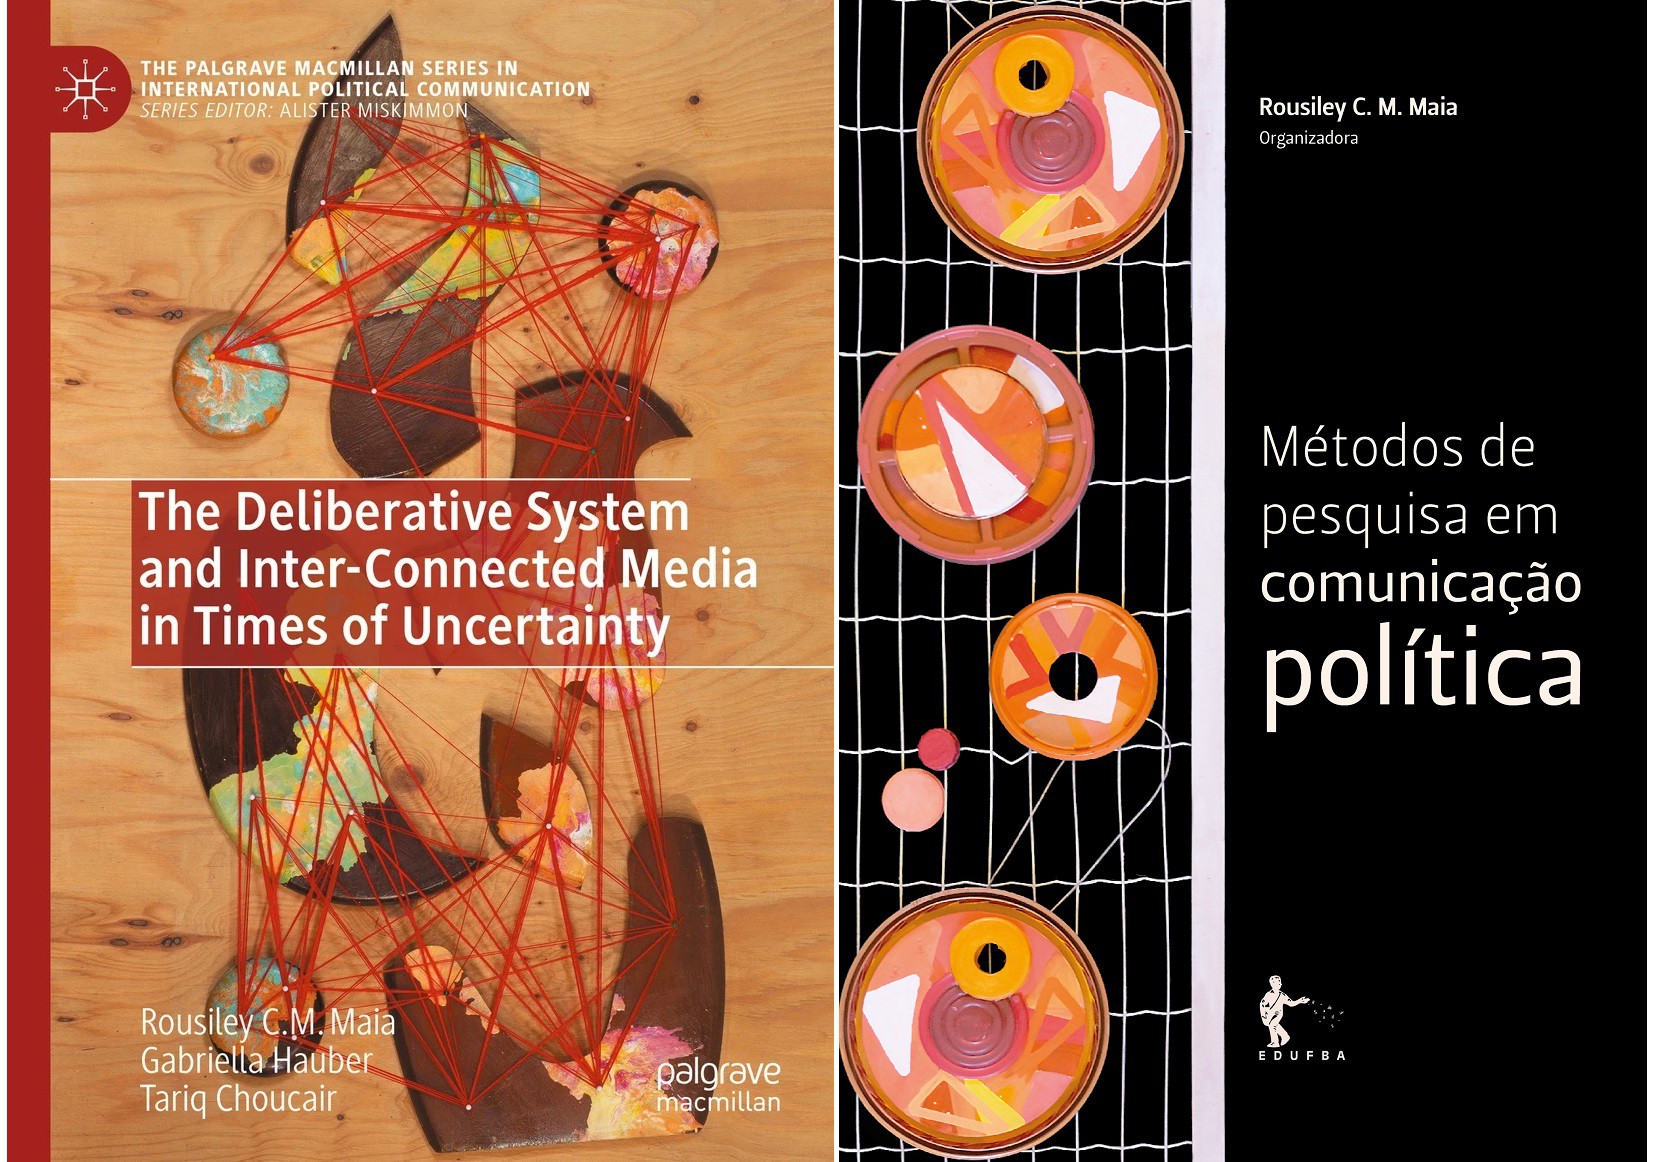 Os livros 'The deliberative system and inter-connected media in times of uncertainty' e 'Métodos de pesquisa em comunicação política' serão apresentados no evento